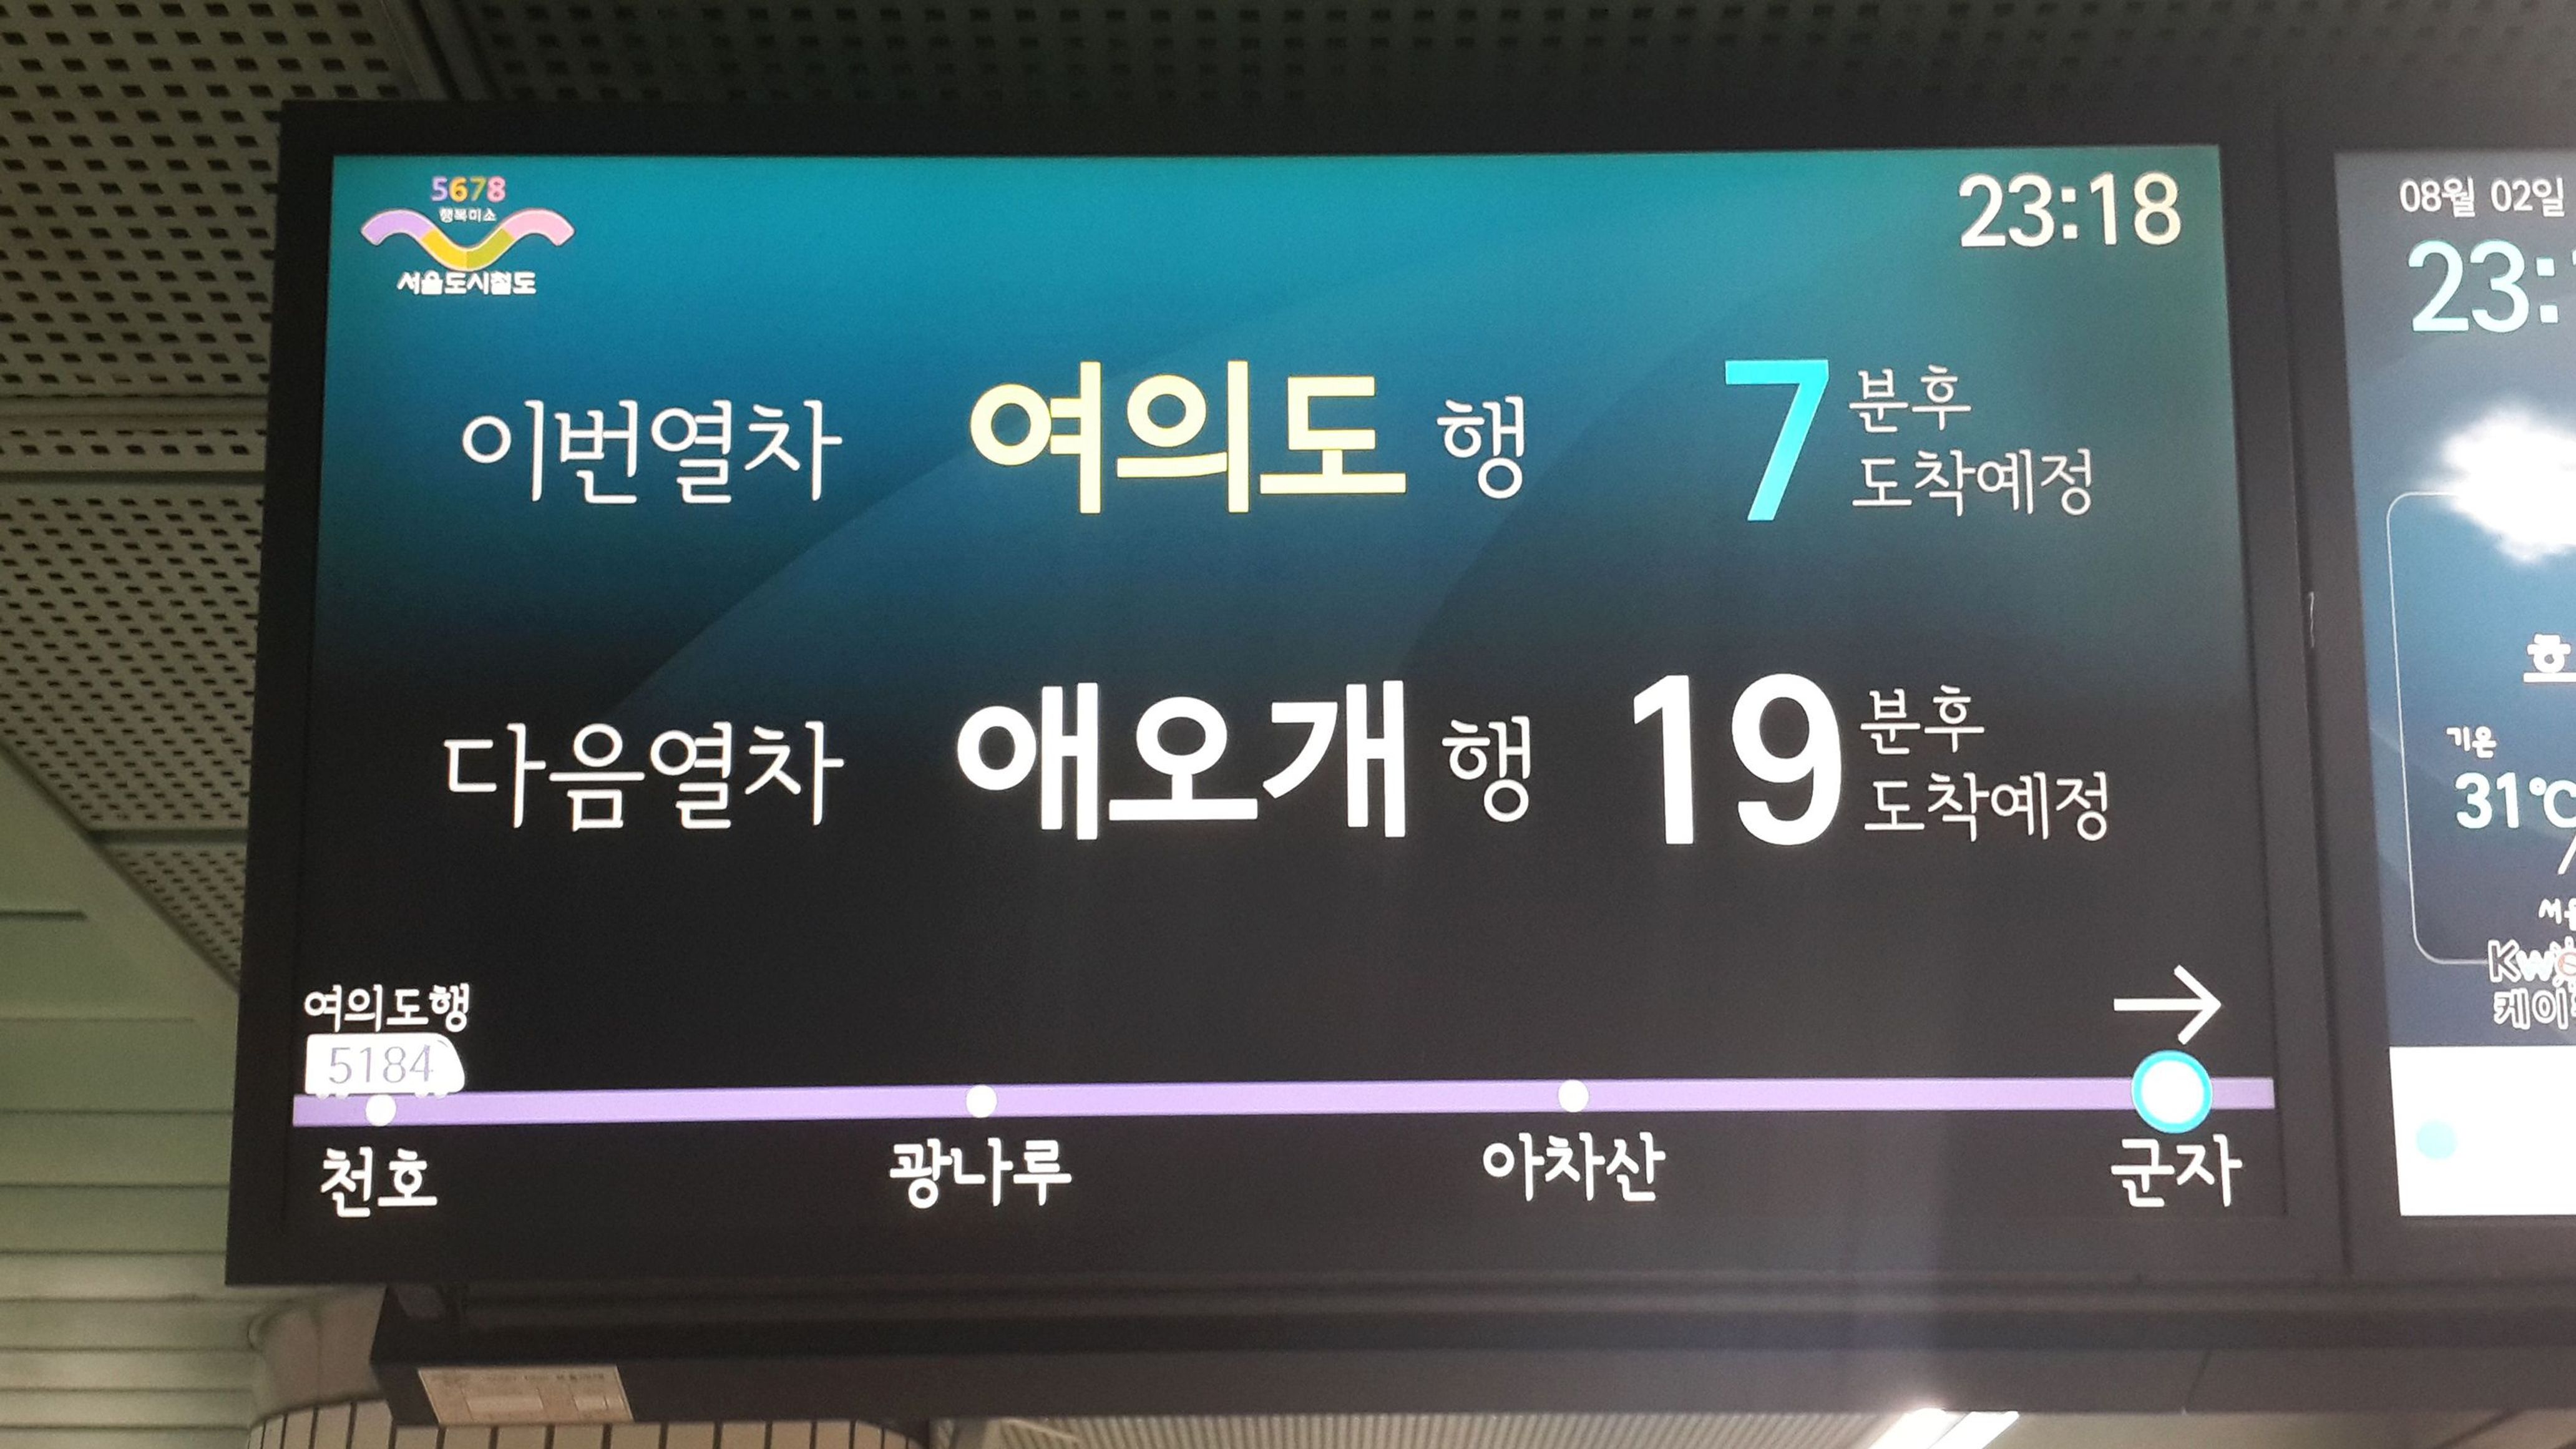 파일:서울도시철도공사 승강장 LCD.jpg